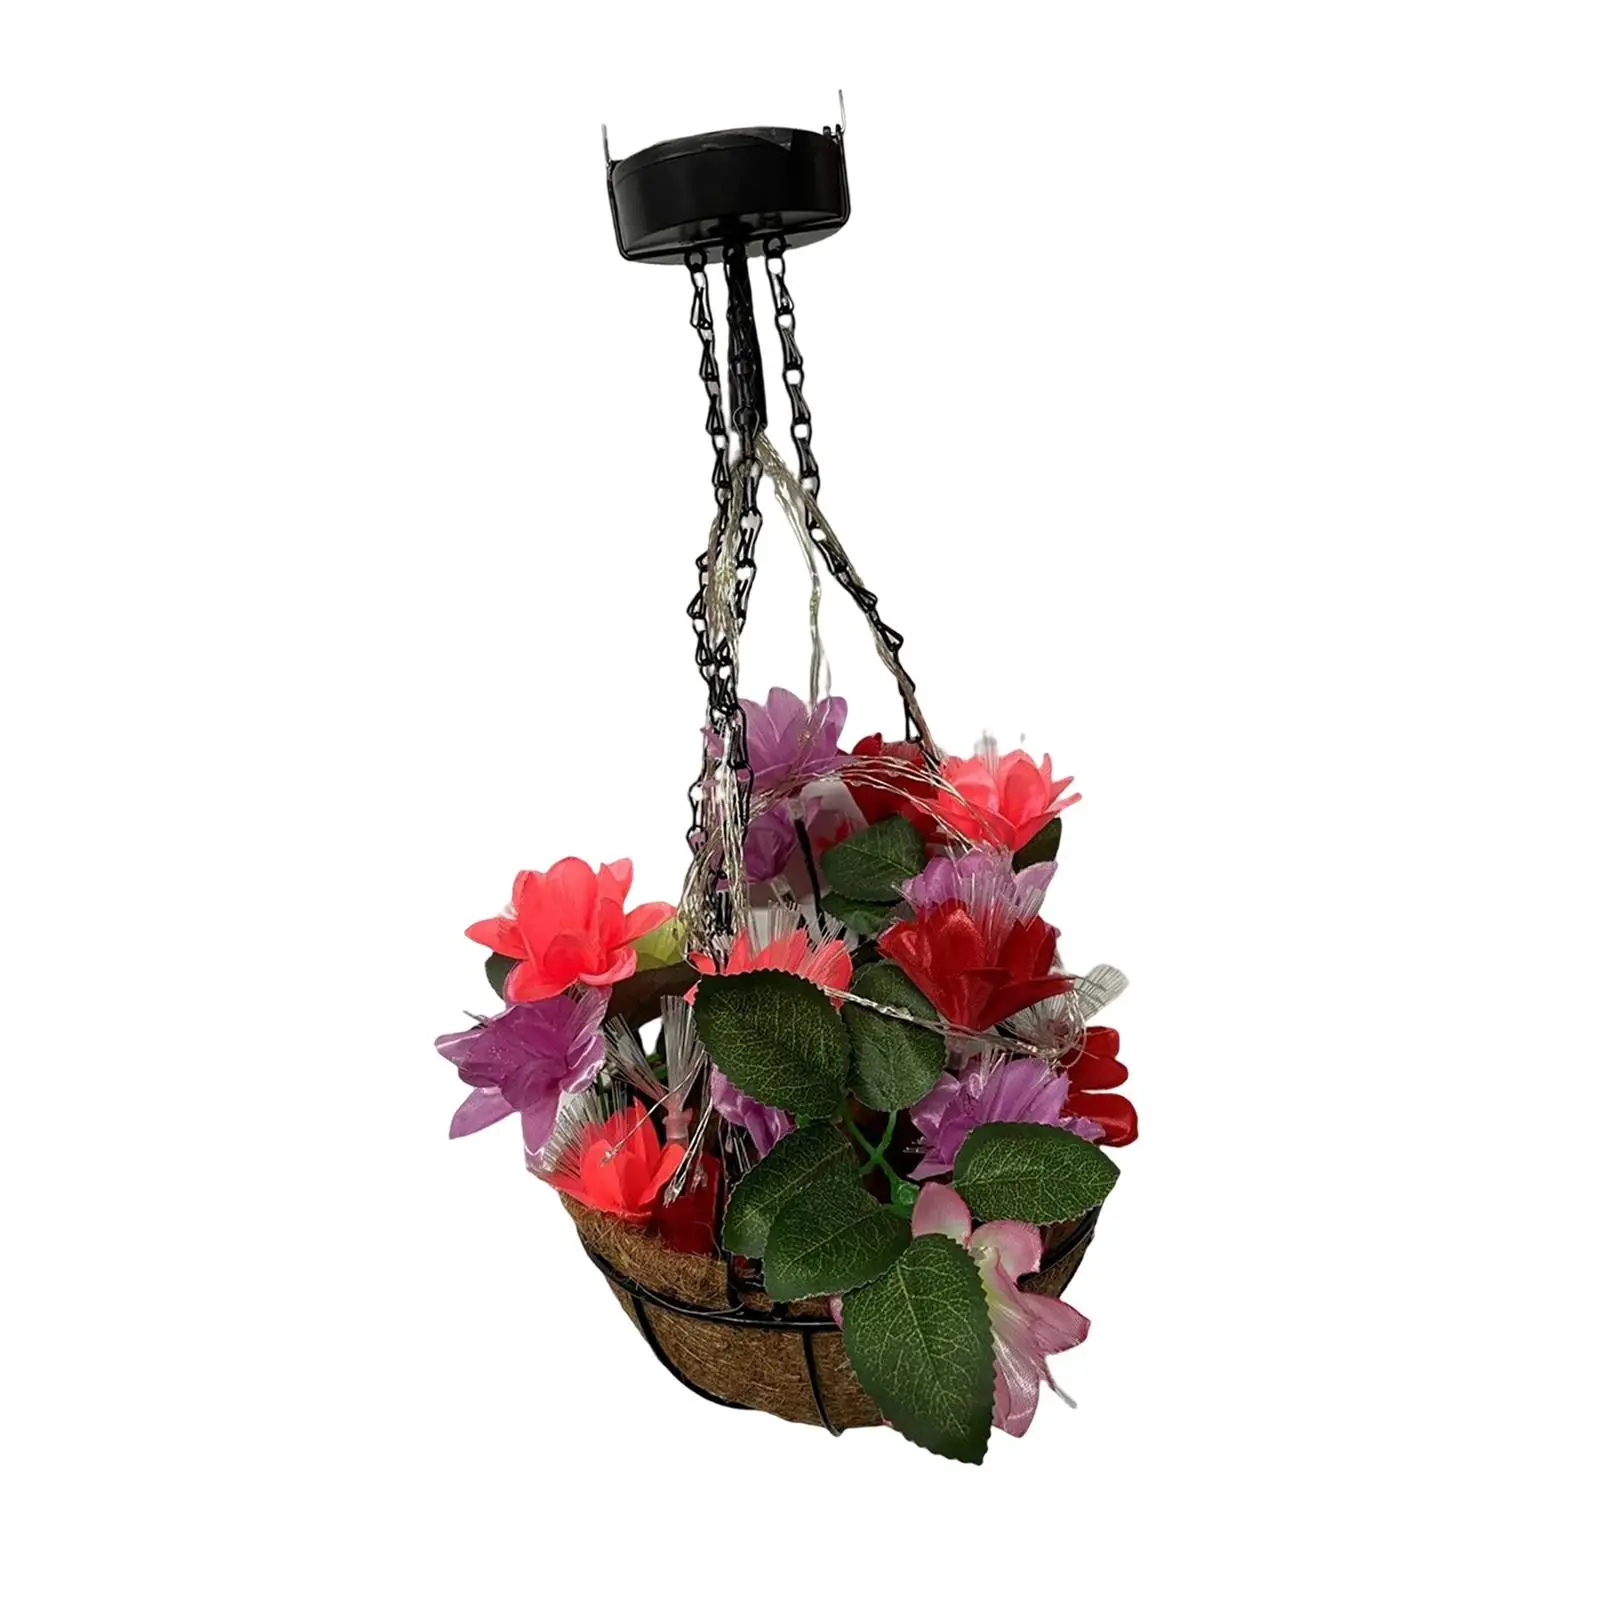 Hanging Basket Light Artificial Flower Simulation LED Lights Pendant DIY for Garden